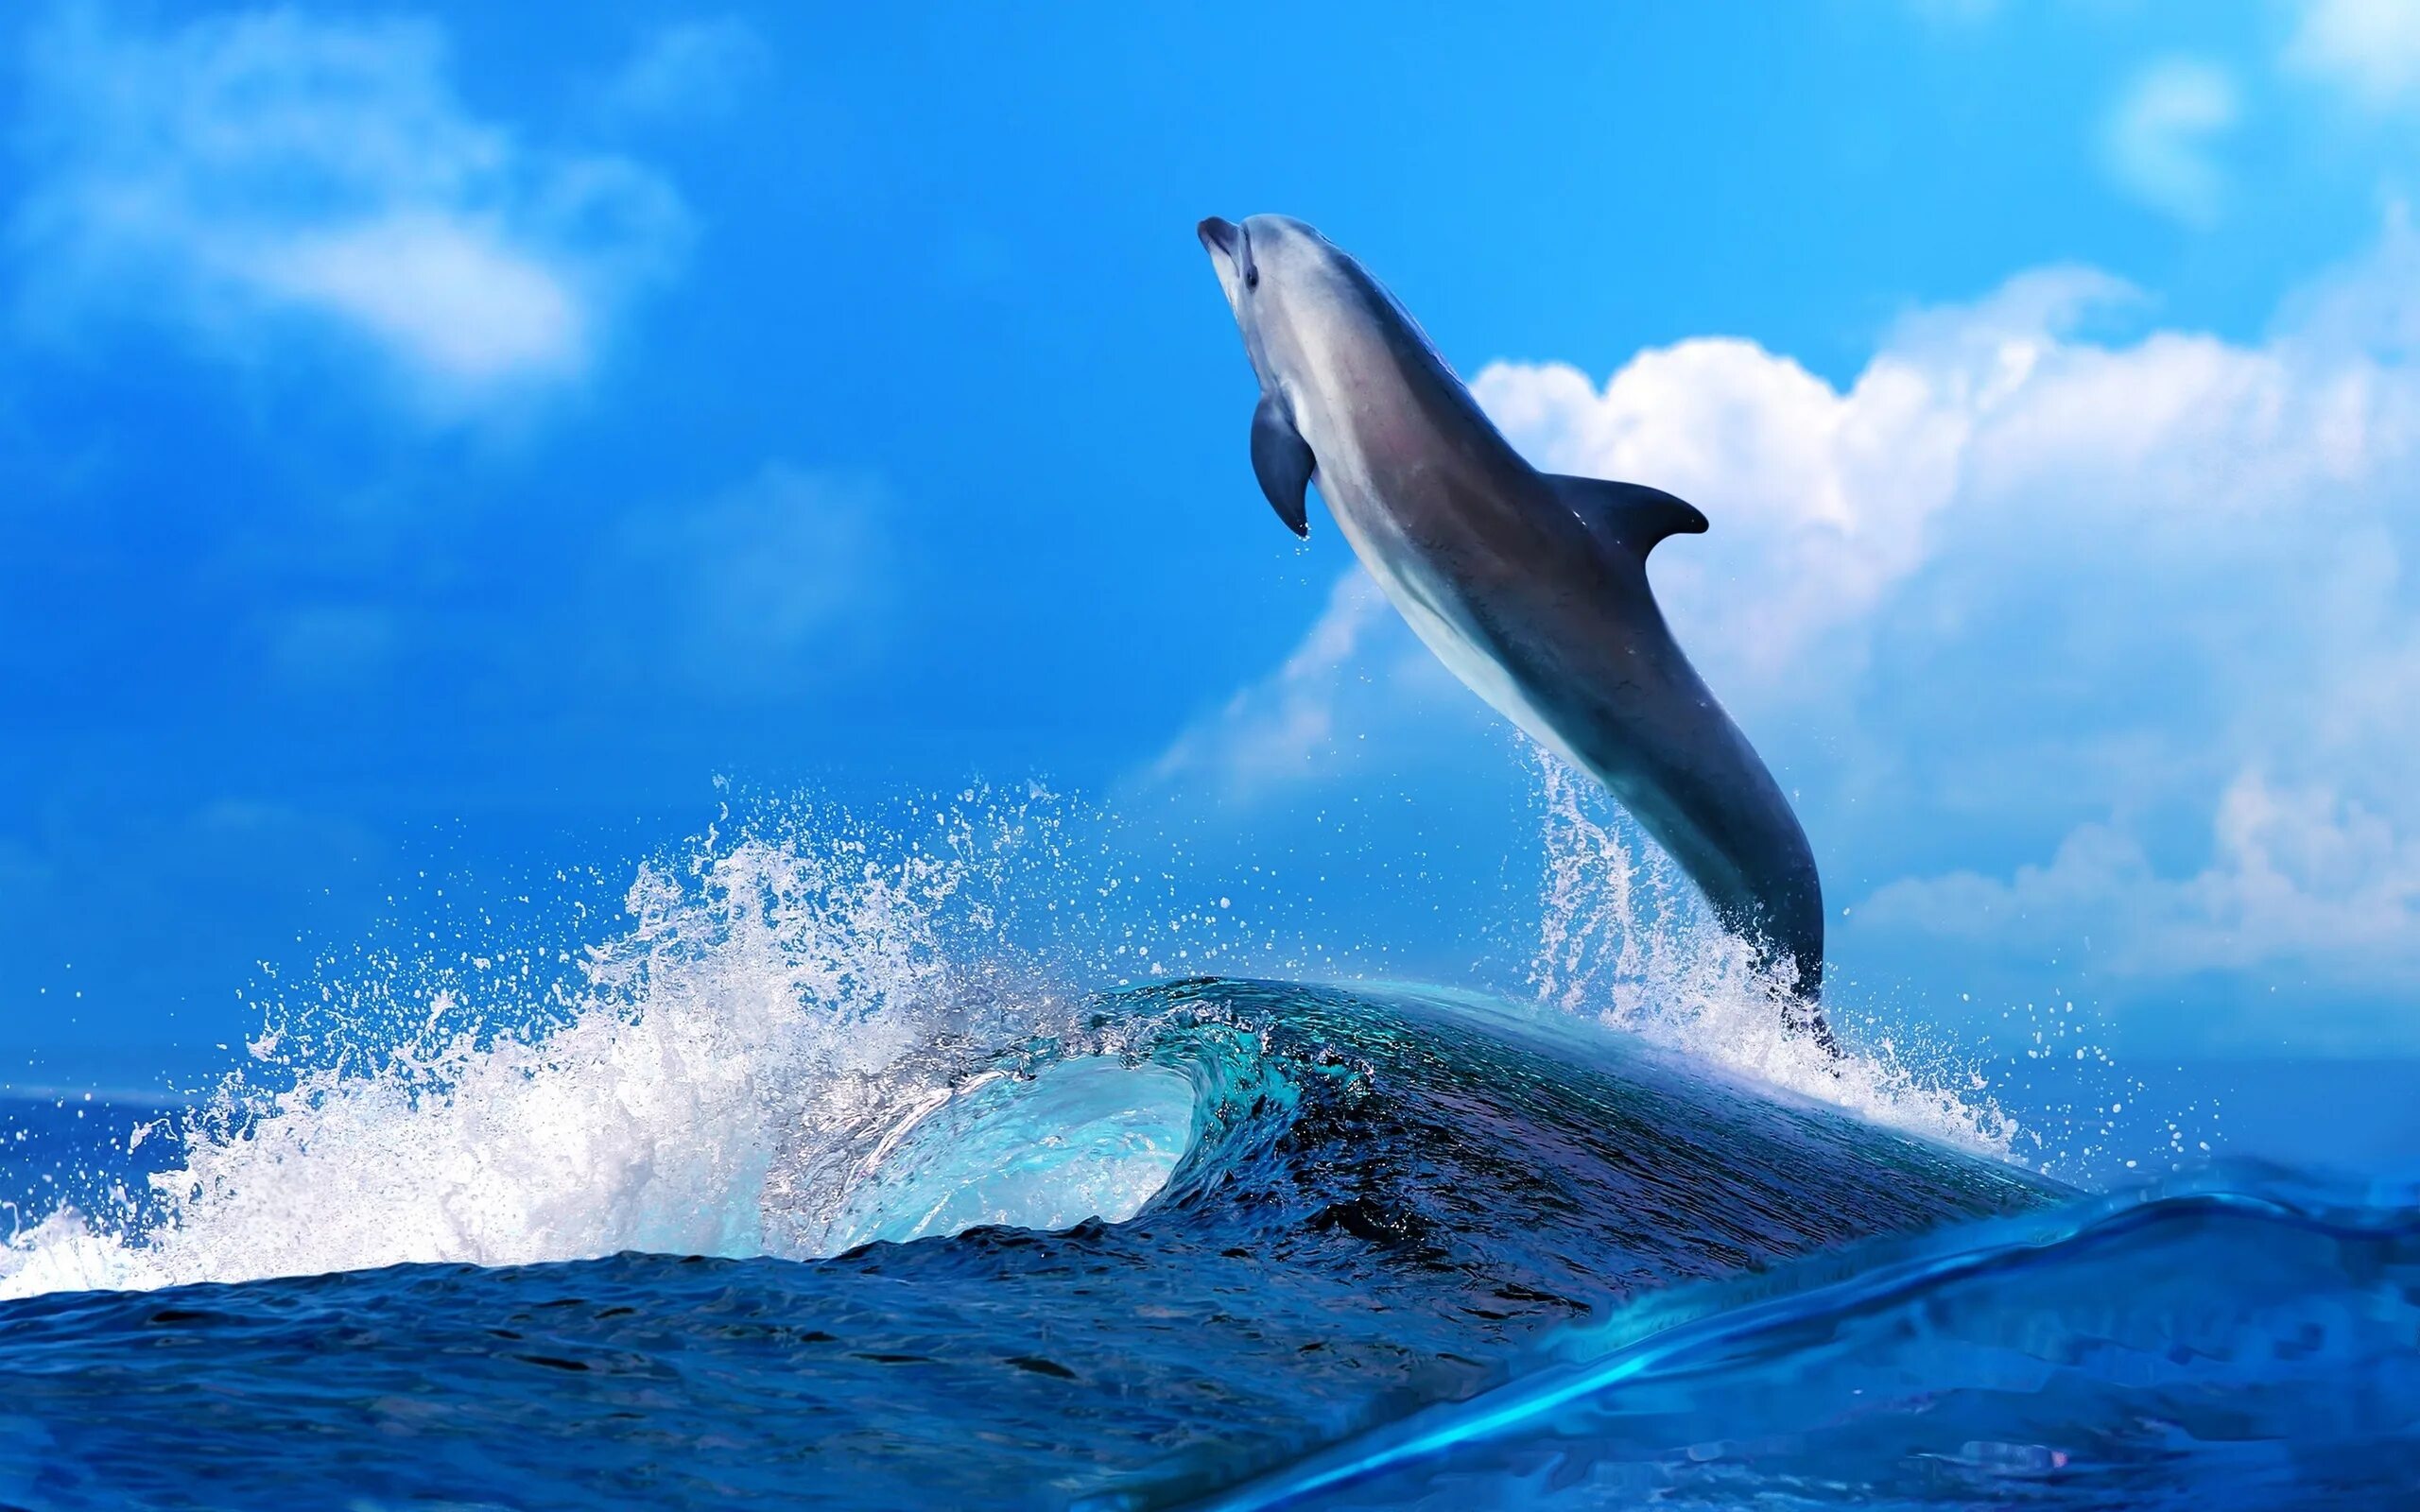 Картинка на большой экран. Картинки на рабочий стол дельфины. Дельфин в море. Дельфины в океане. Фото дельфинов красивые в море.